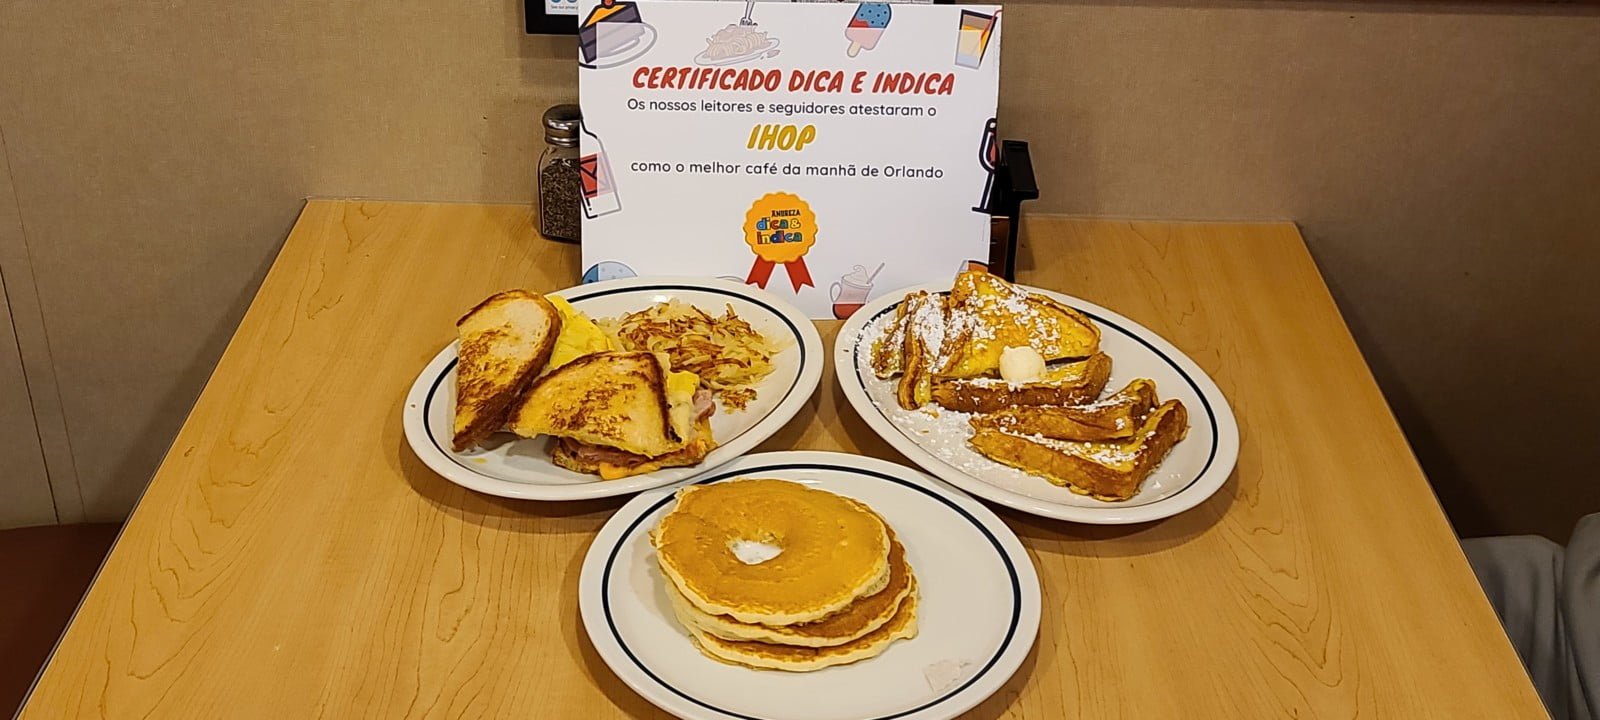 Melhor café da manhã de Orlando: Ihop – Eleição Dica e Indica